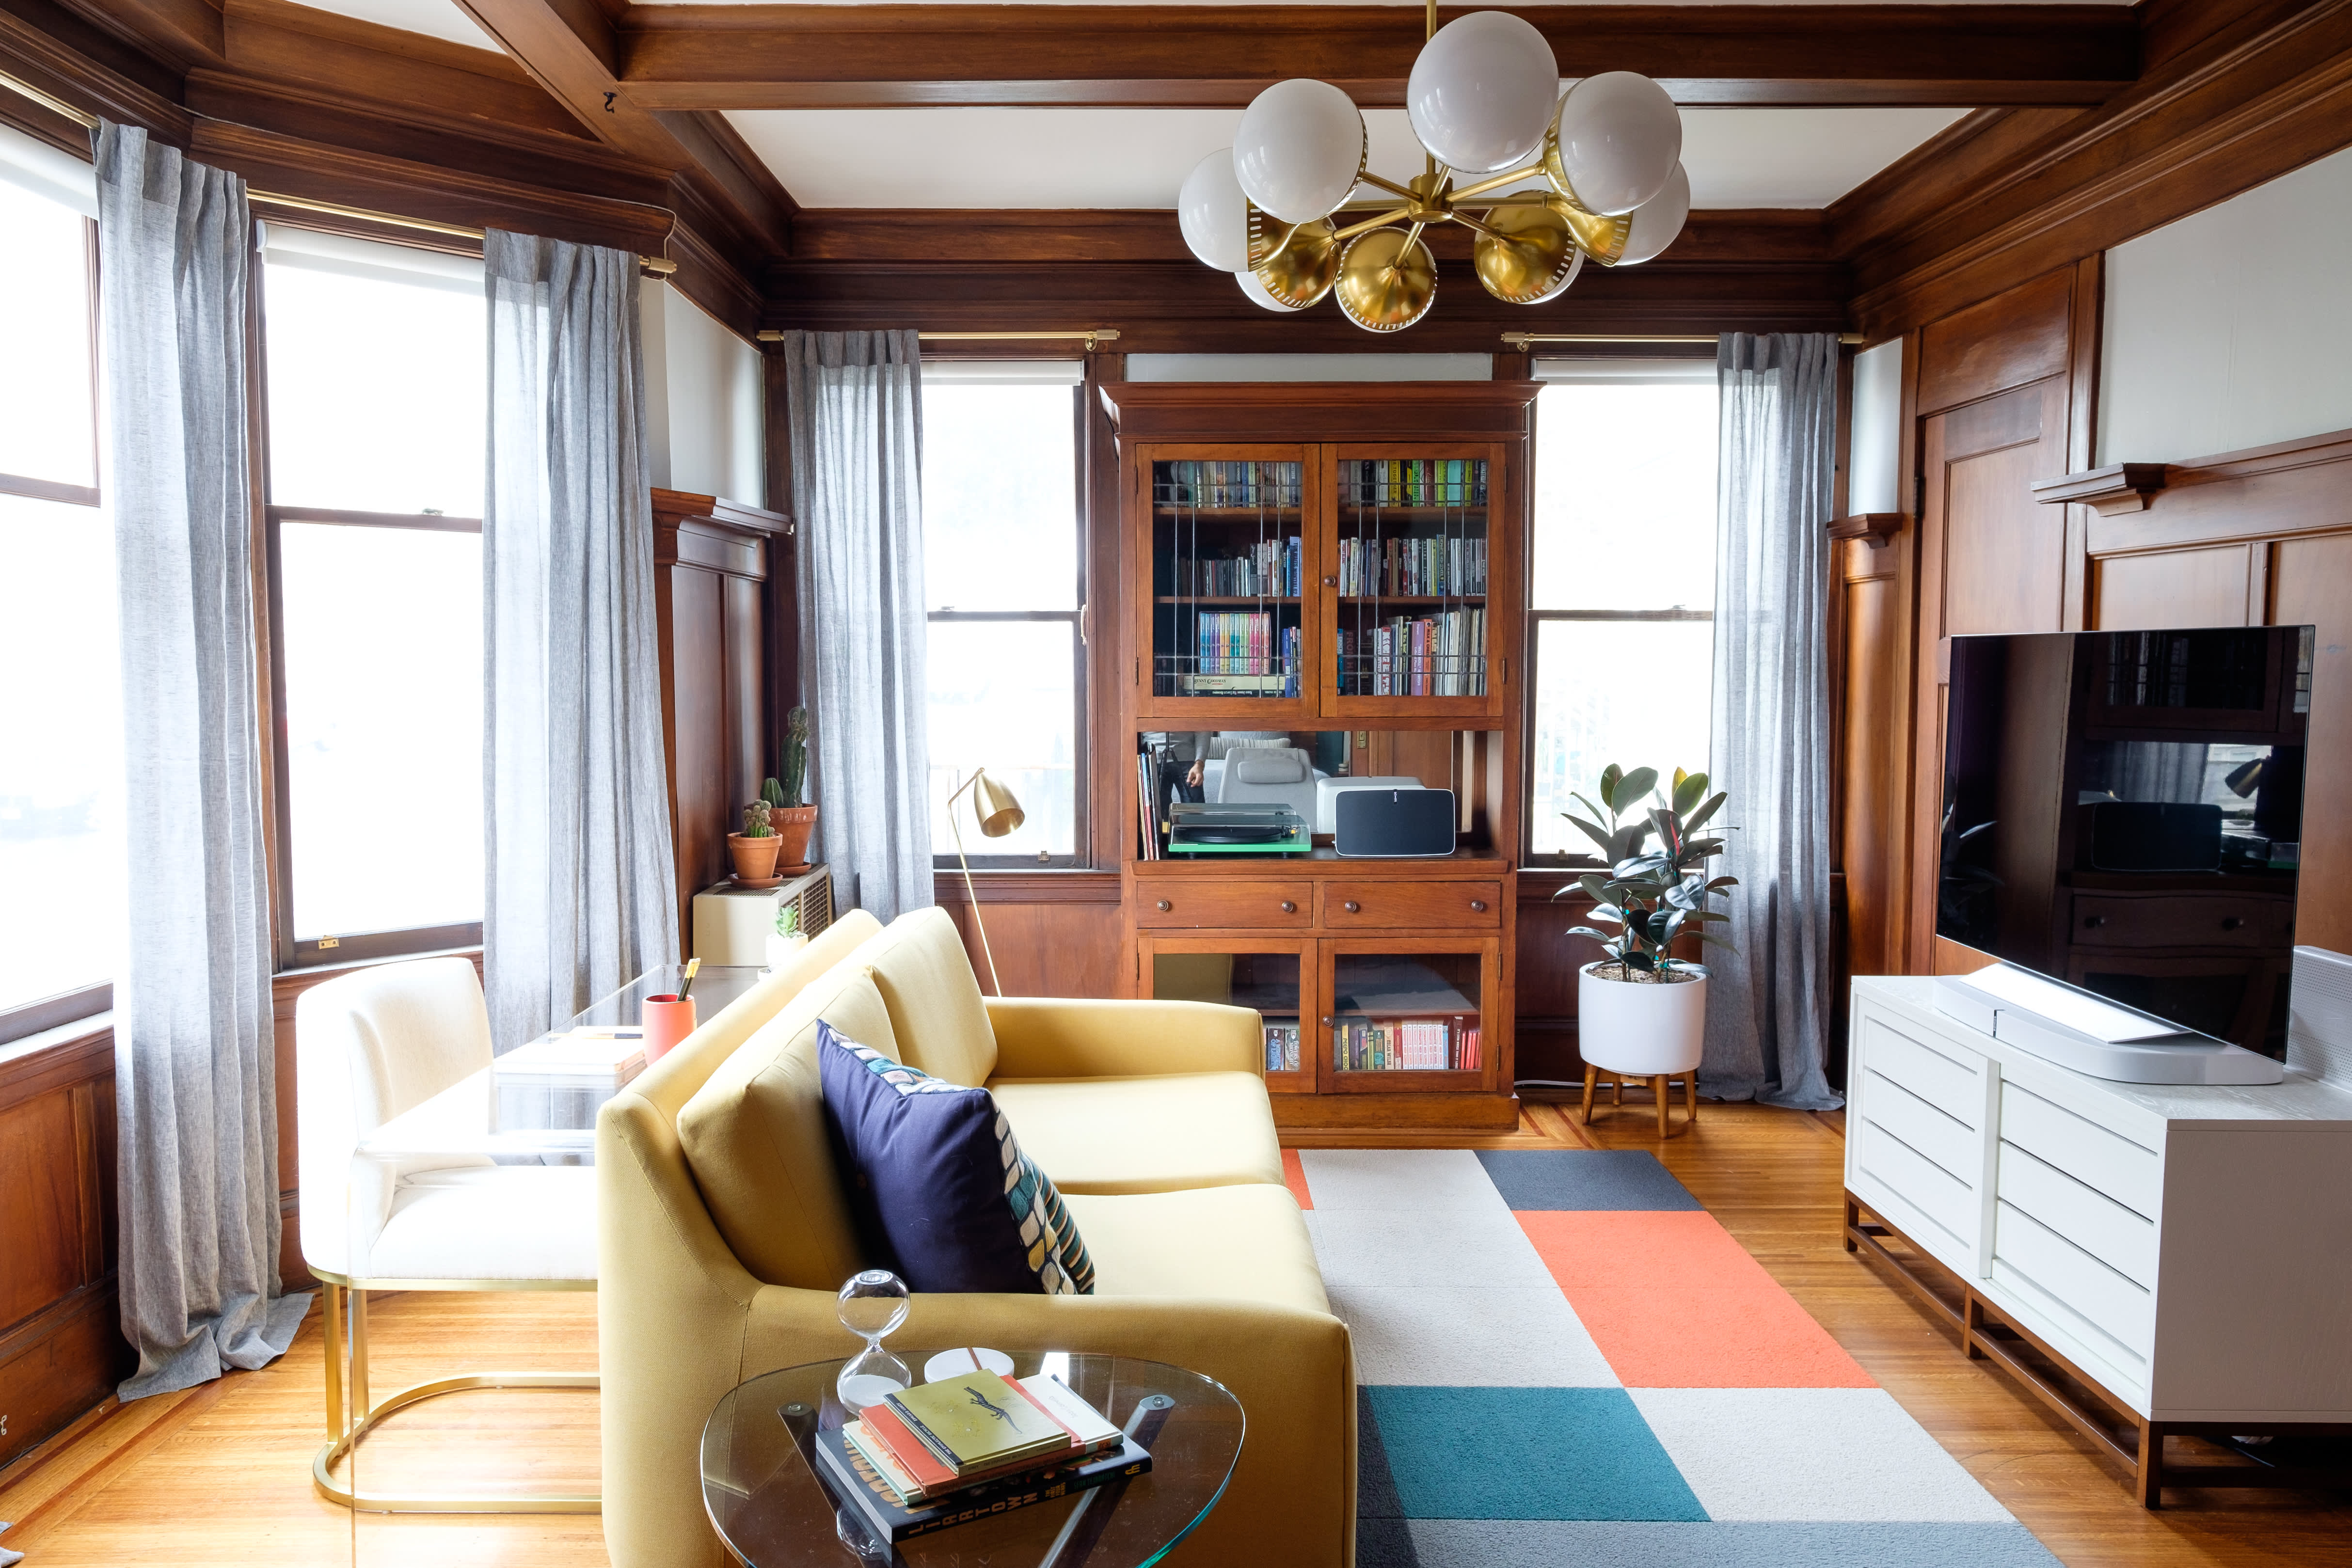 Living Room Sets San Francisco Ca